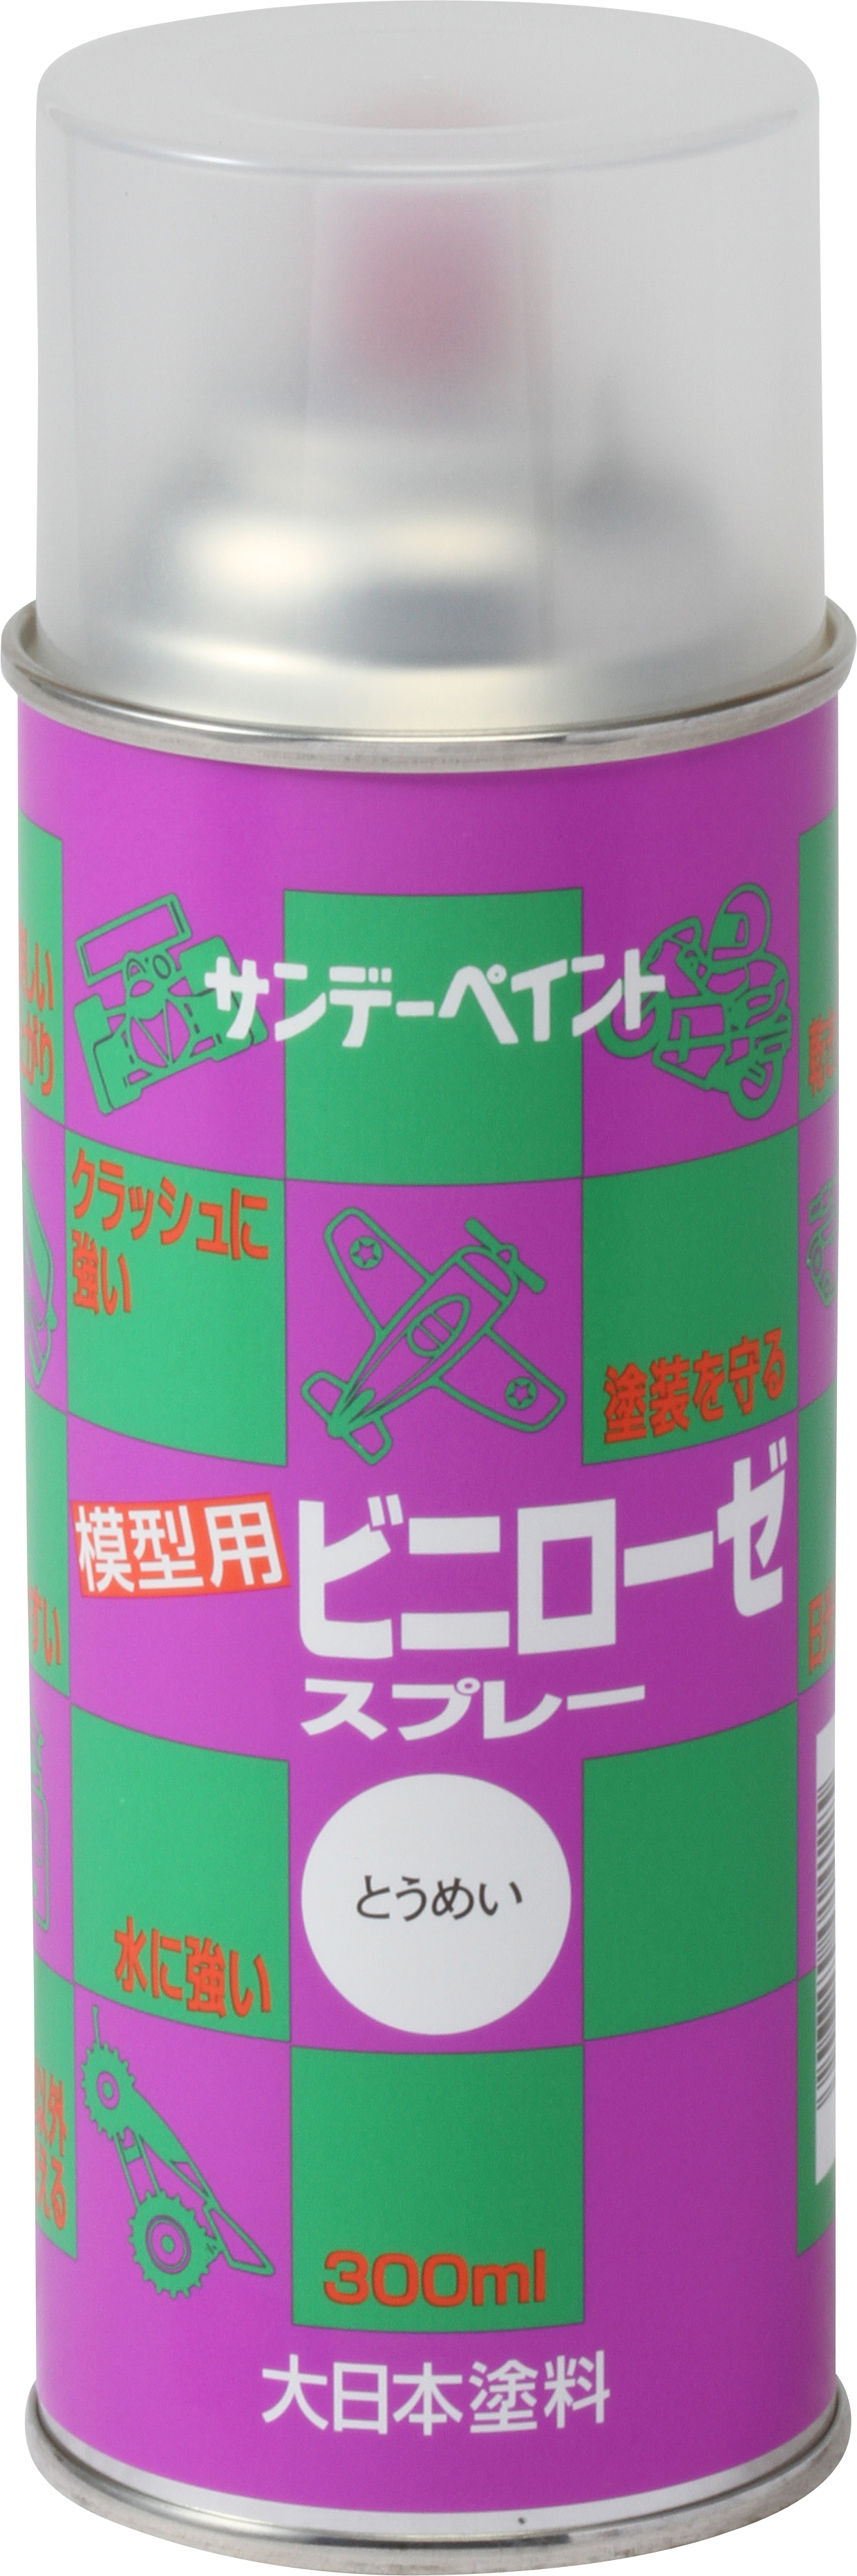 65%OFF【送料無料】 工具ランドショップシンロイヒ ロイヒカラーネオ ４ｋｇ イエロー 1缶 品番